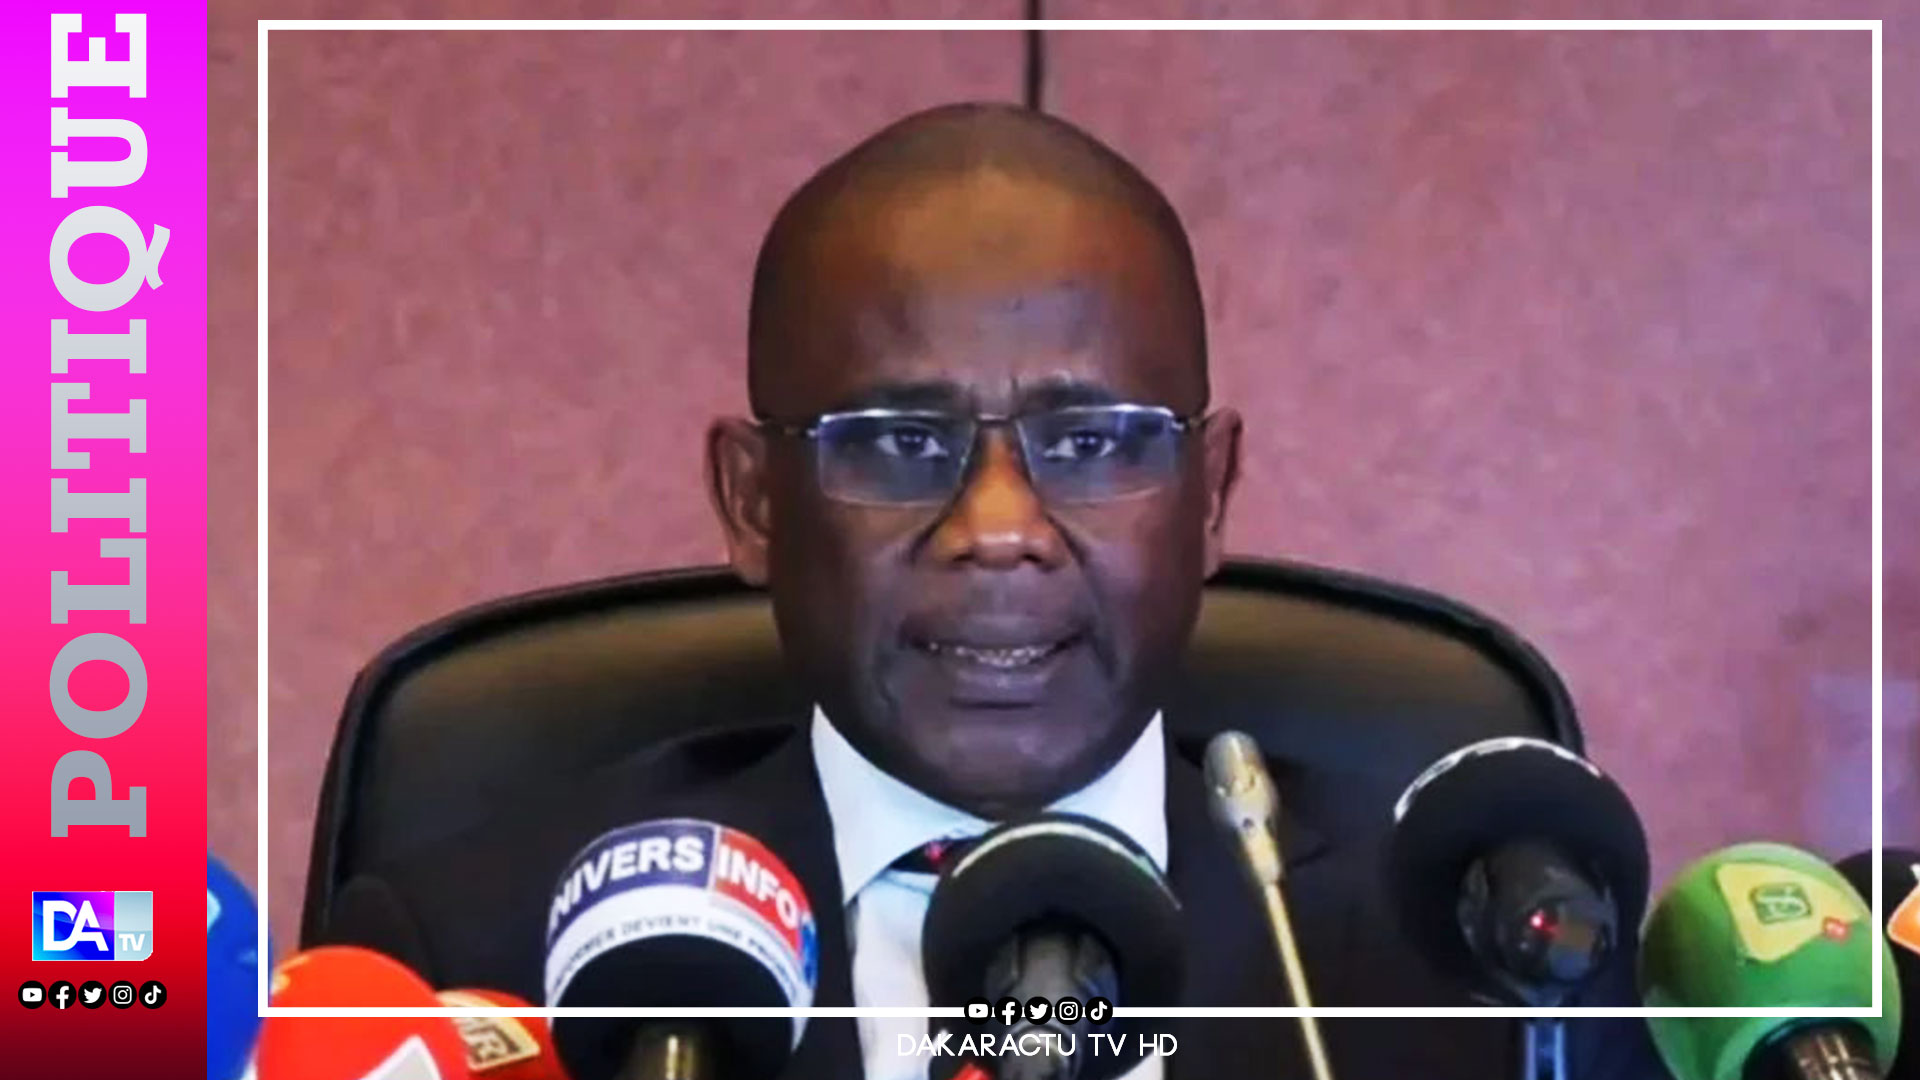 Défiance de l’institution judiciaire - mépris envers des juges : Les vérités crues du premier président de la cour d’appel de Dakar, Amady Diouf.